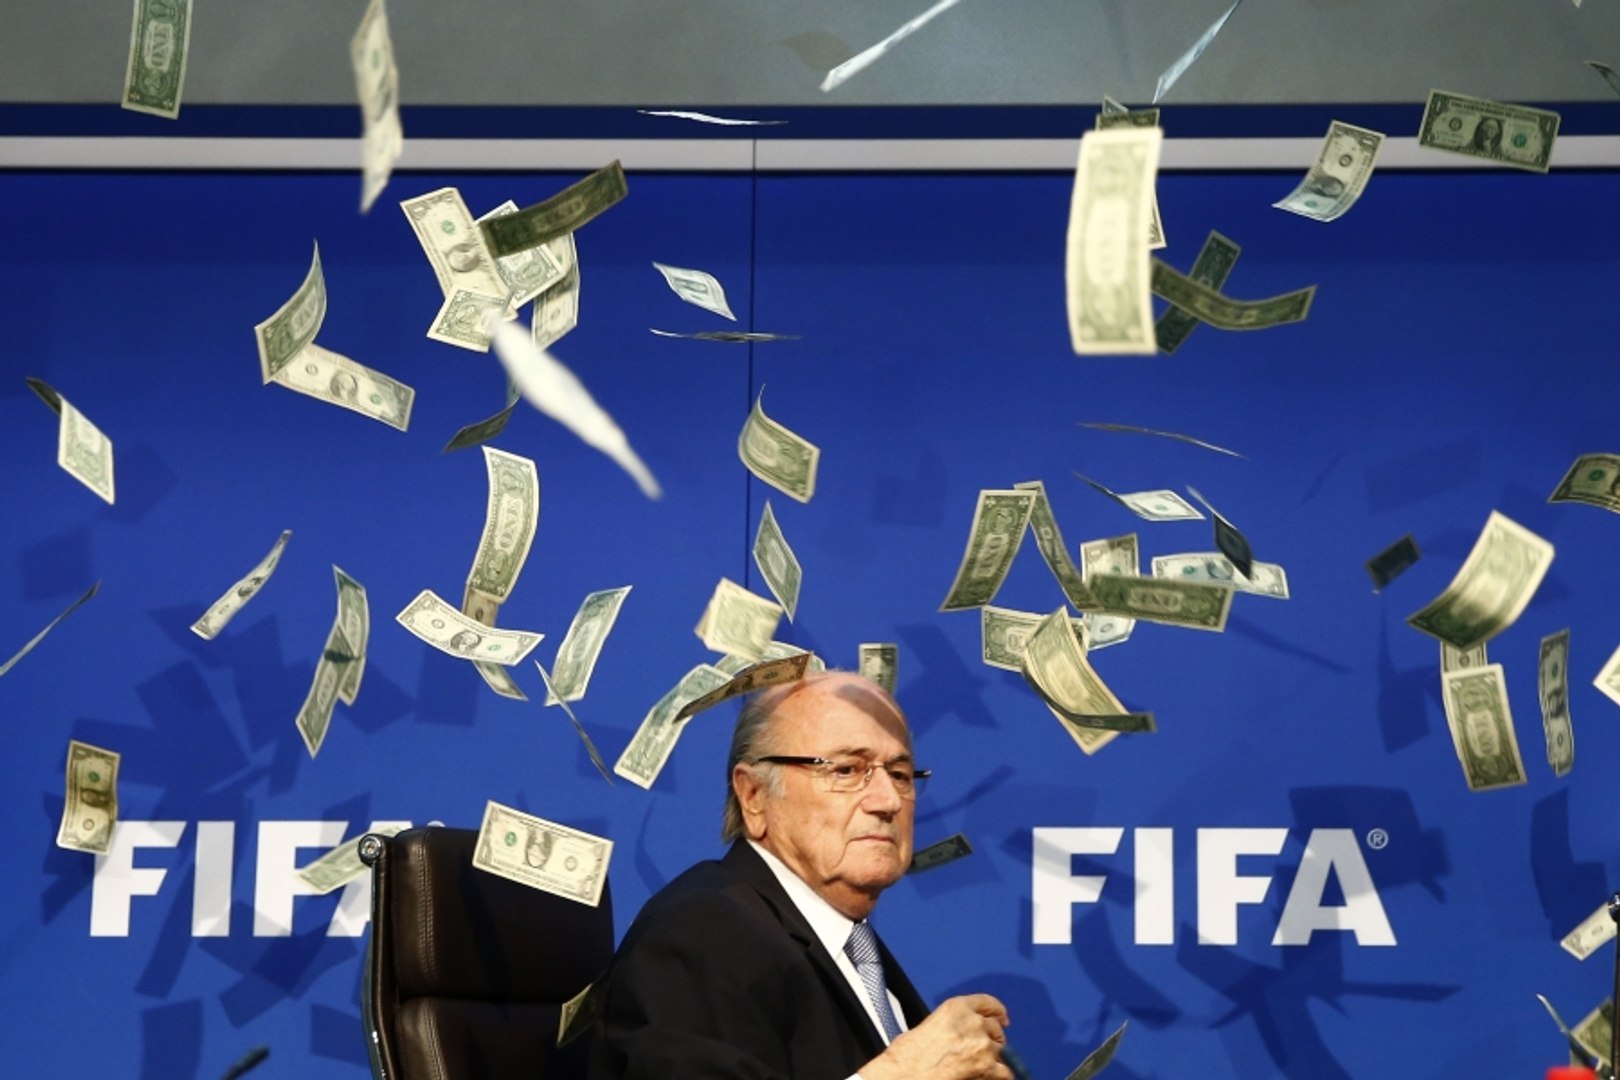 Conference de presse FIFA: il jette des billets à la tête de Blatter -  Vidéo Dailymotion